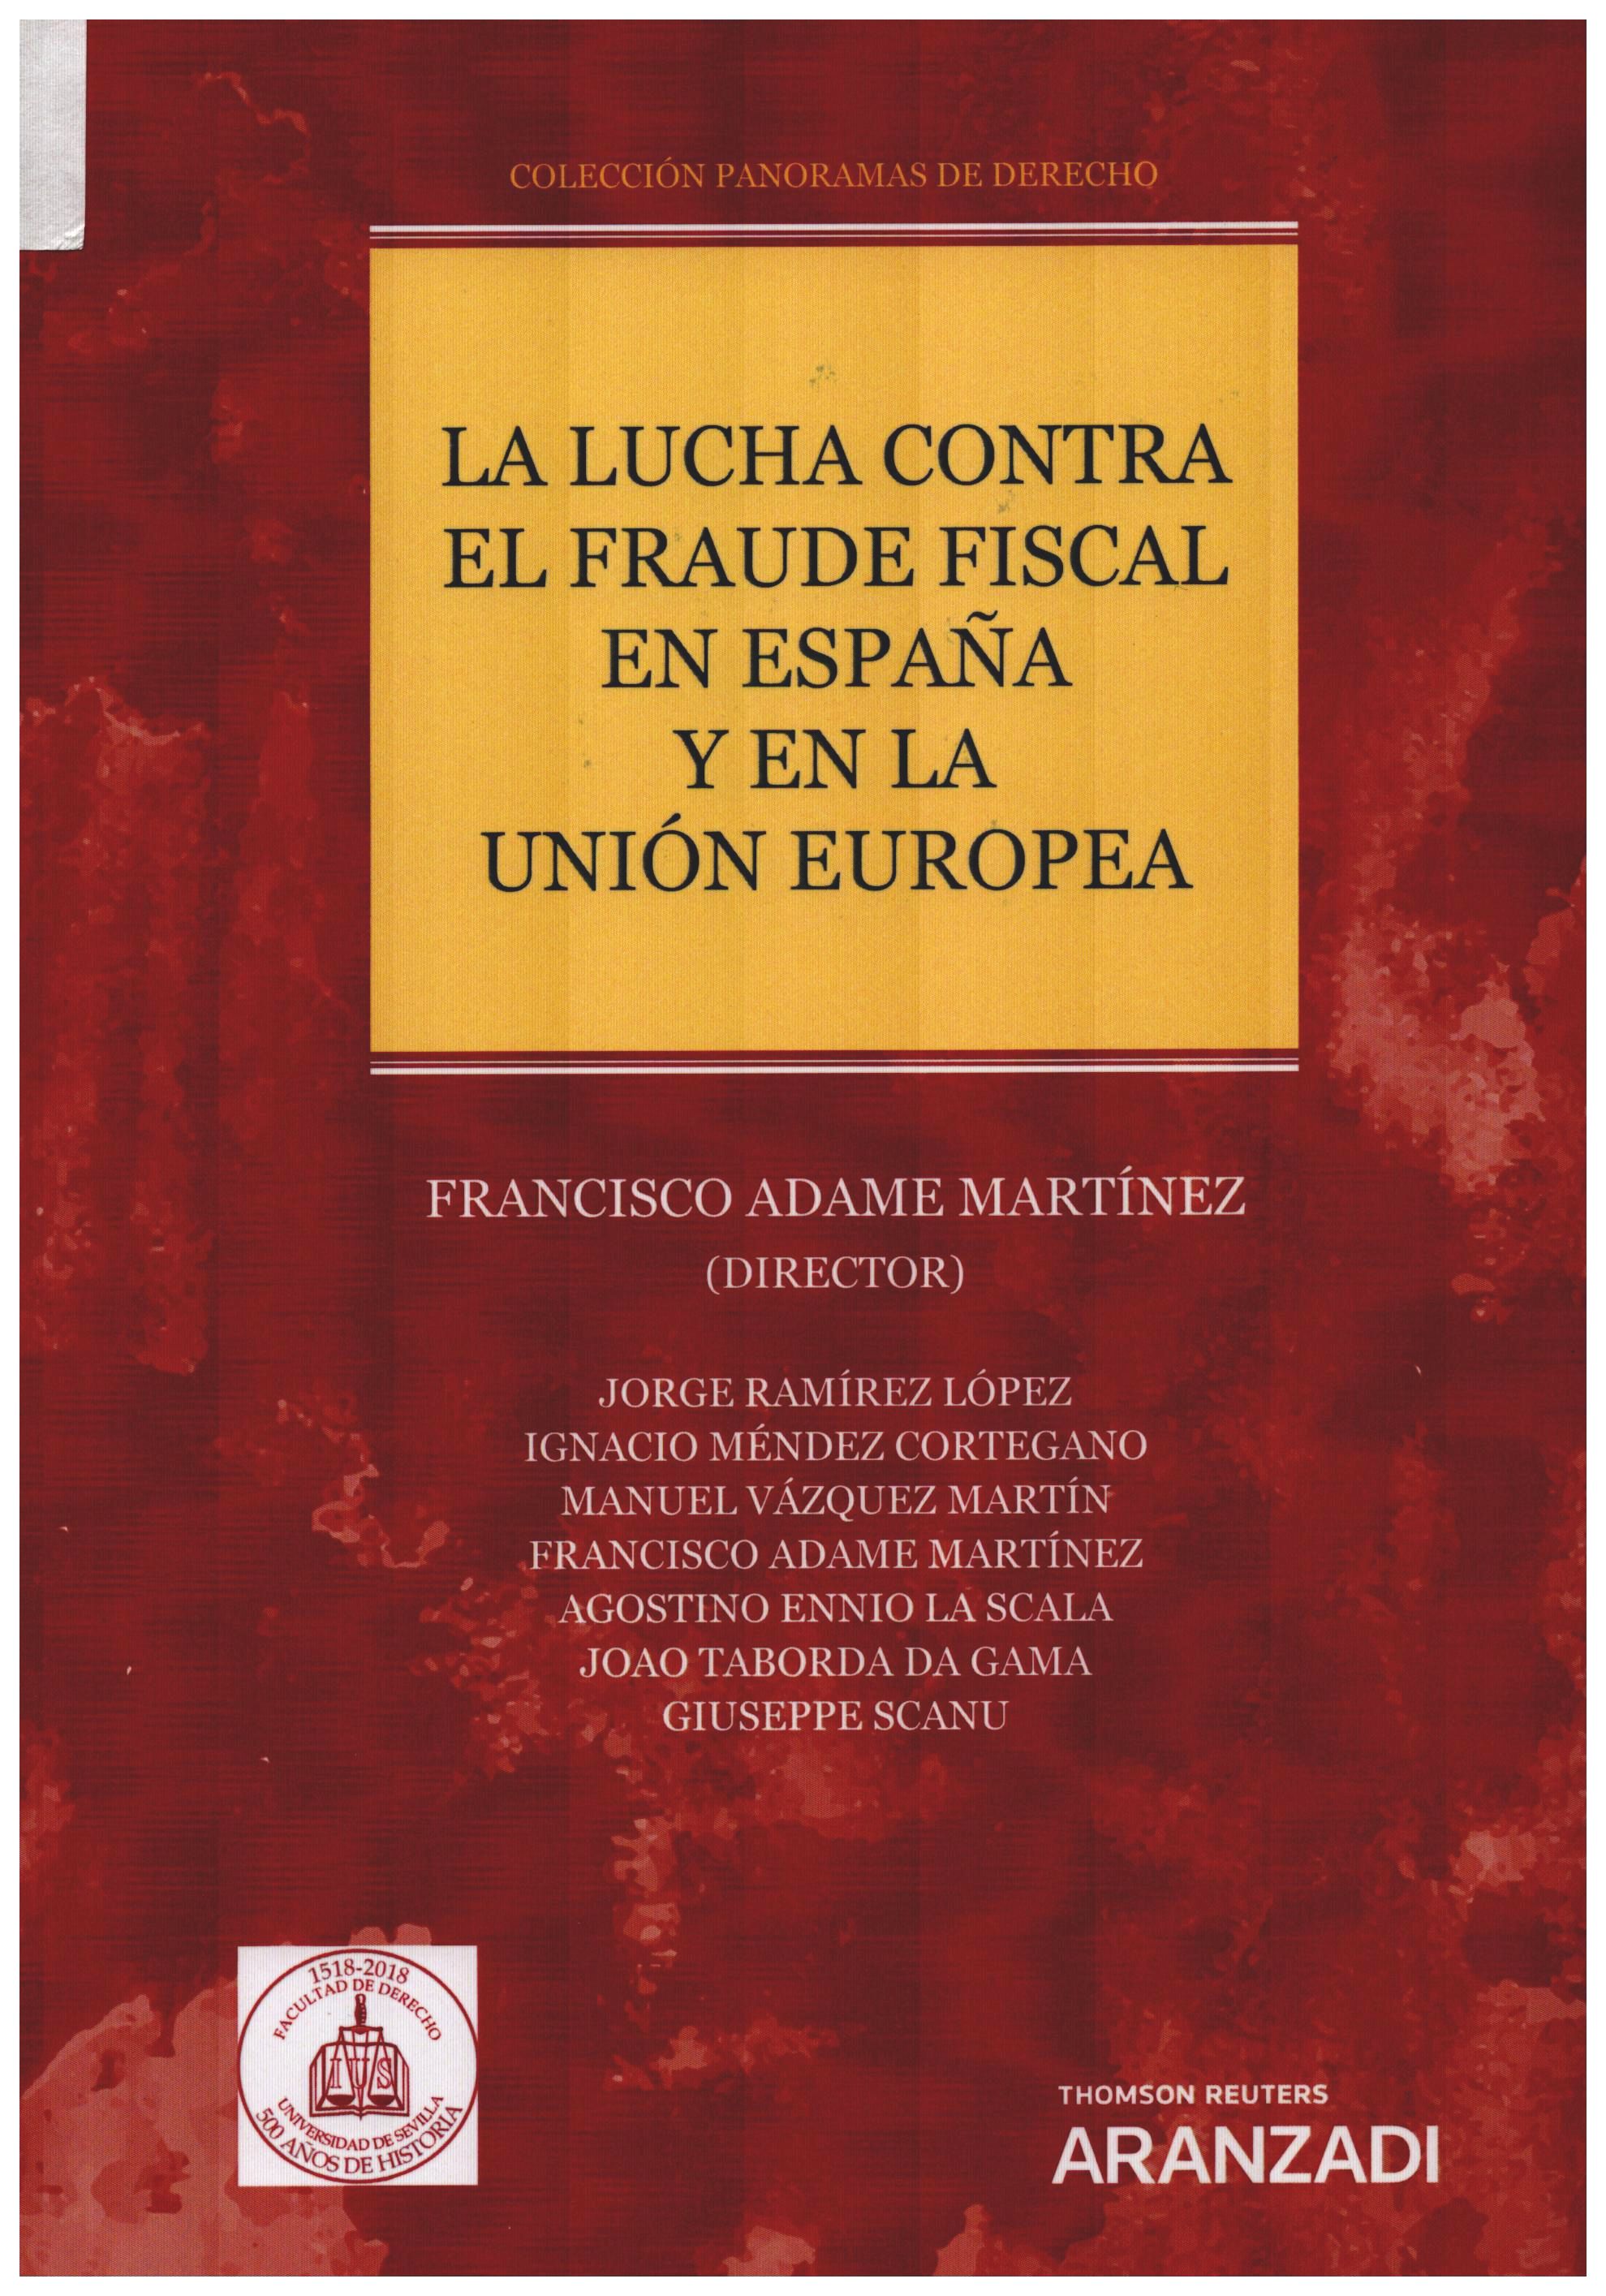 Imagen de portada del libro La lucha contra el fraude fiscal en España y en la Unión Europea